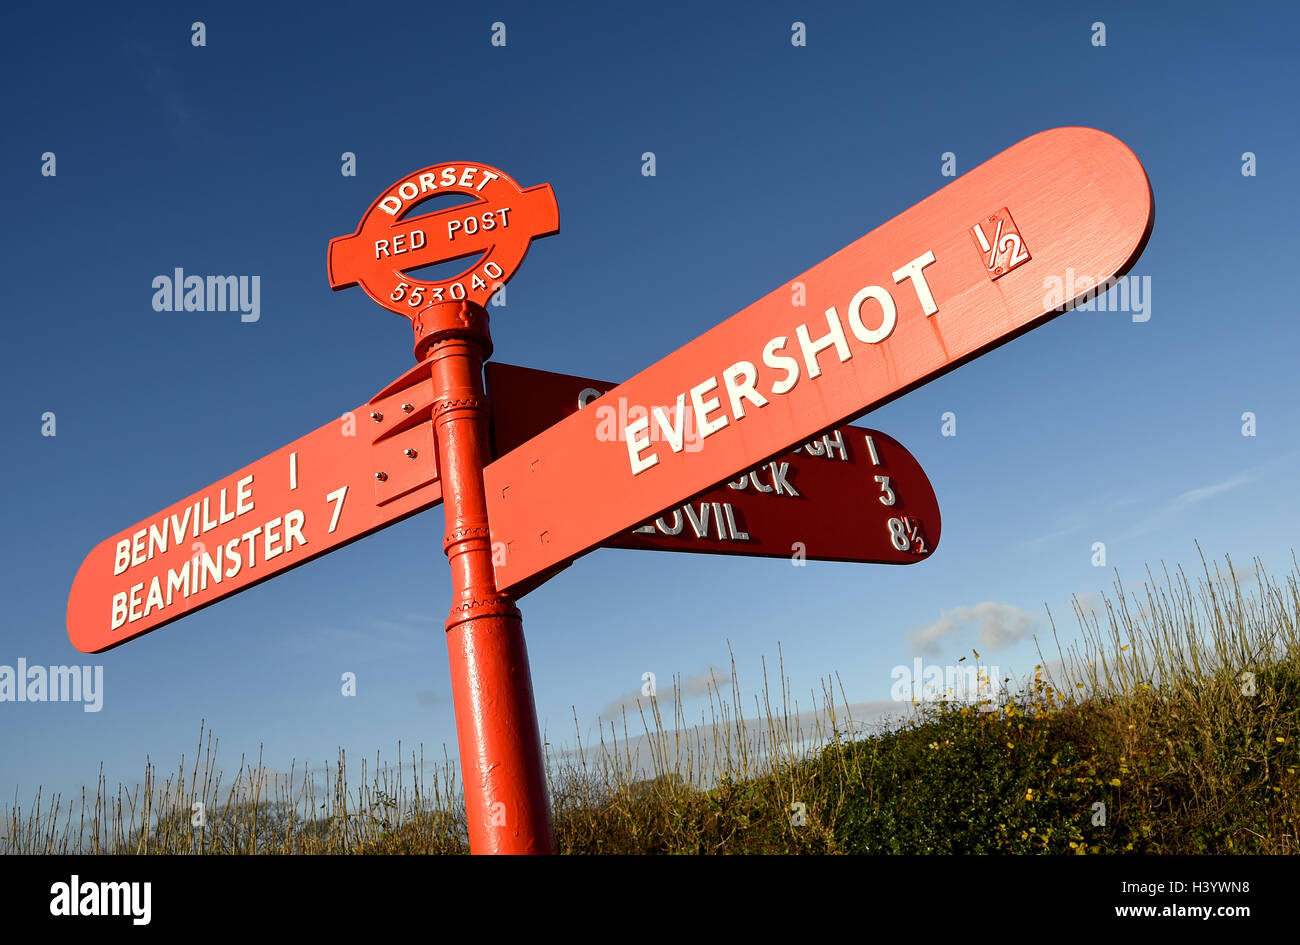 'Red Post' Red fingerpost 'finger post' sign signpost, Dorset, UK Stock Photo